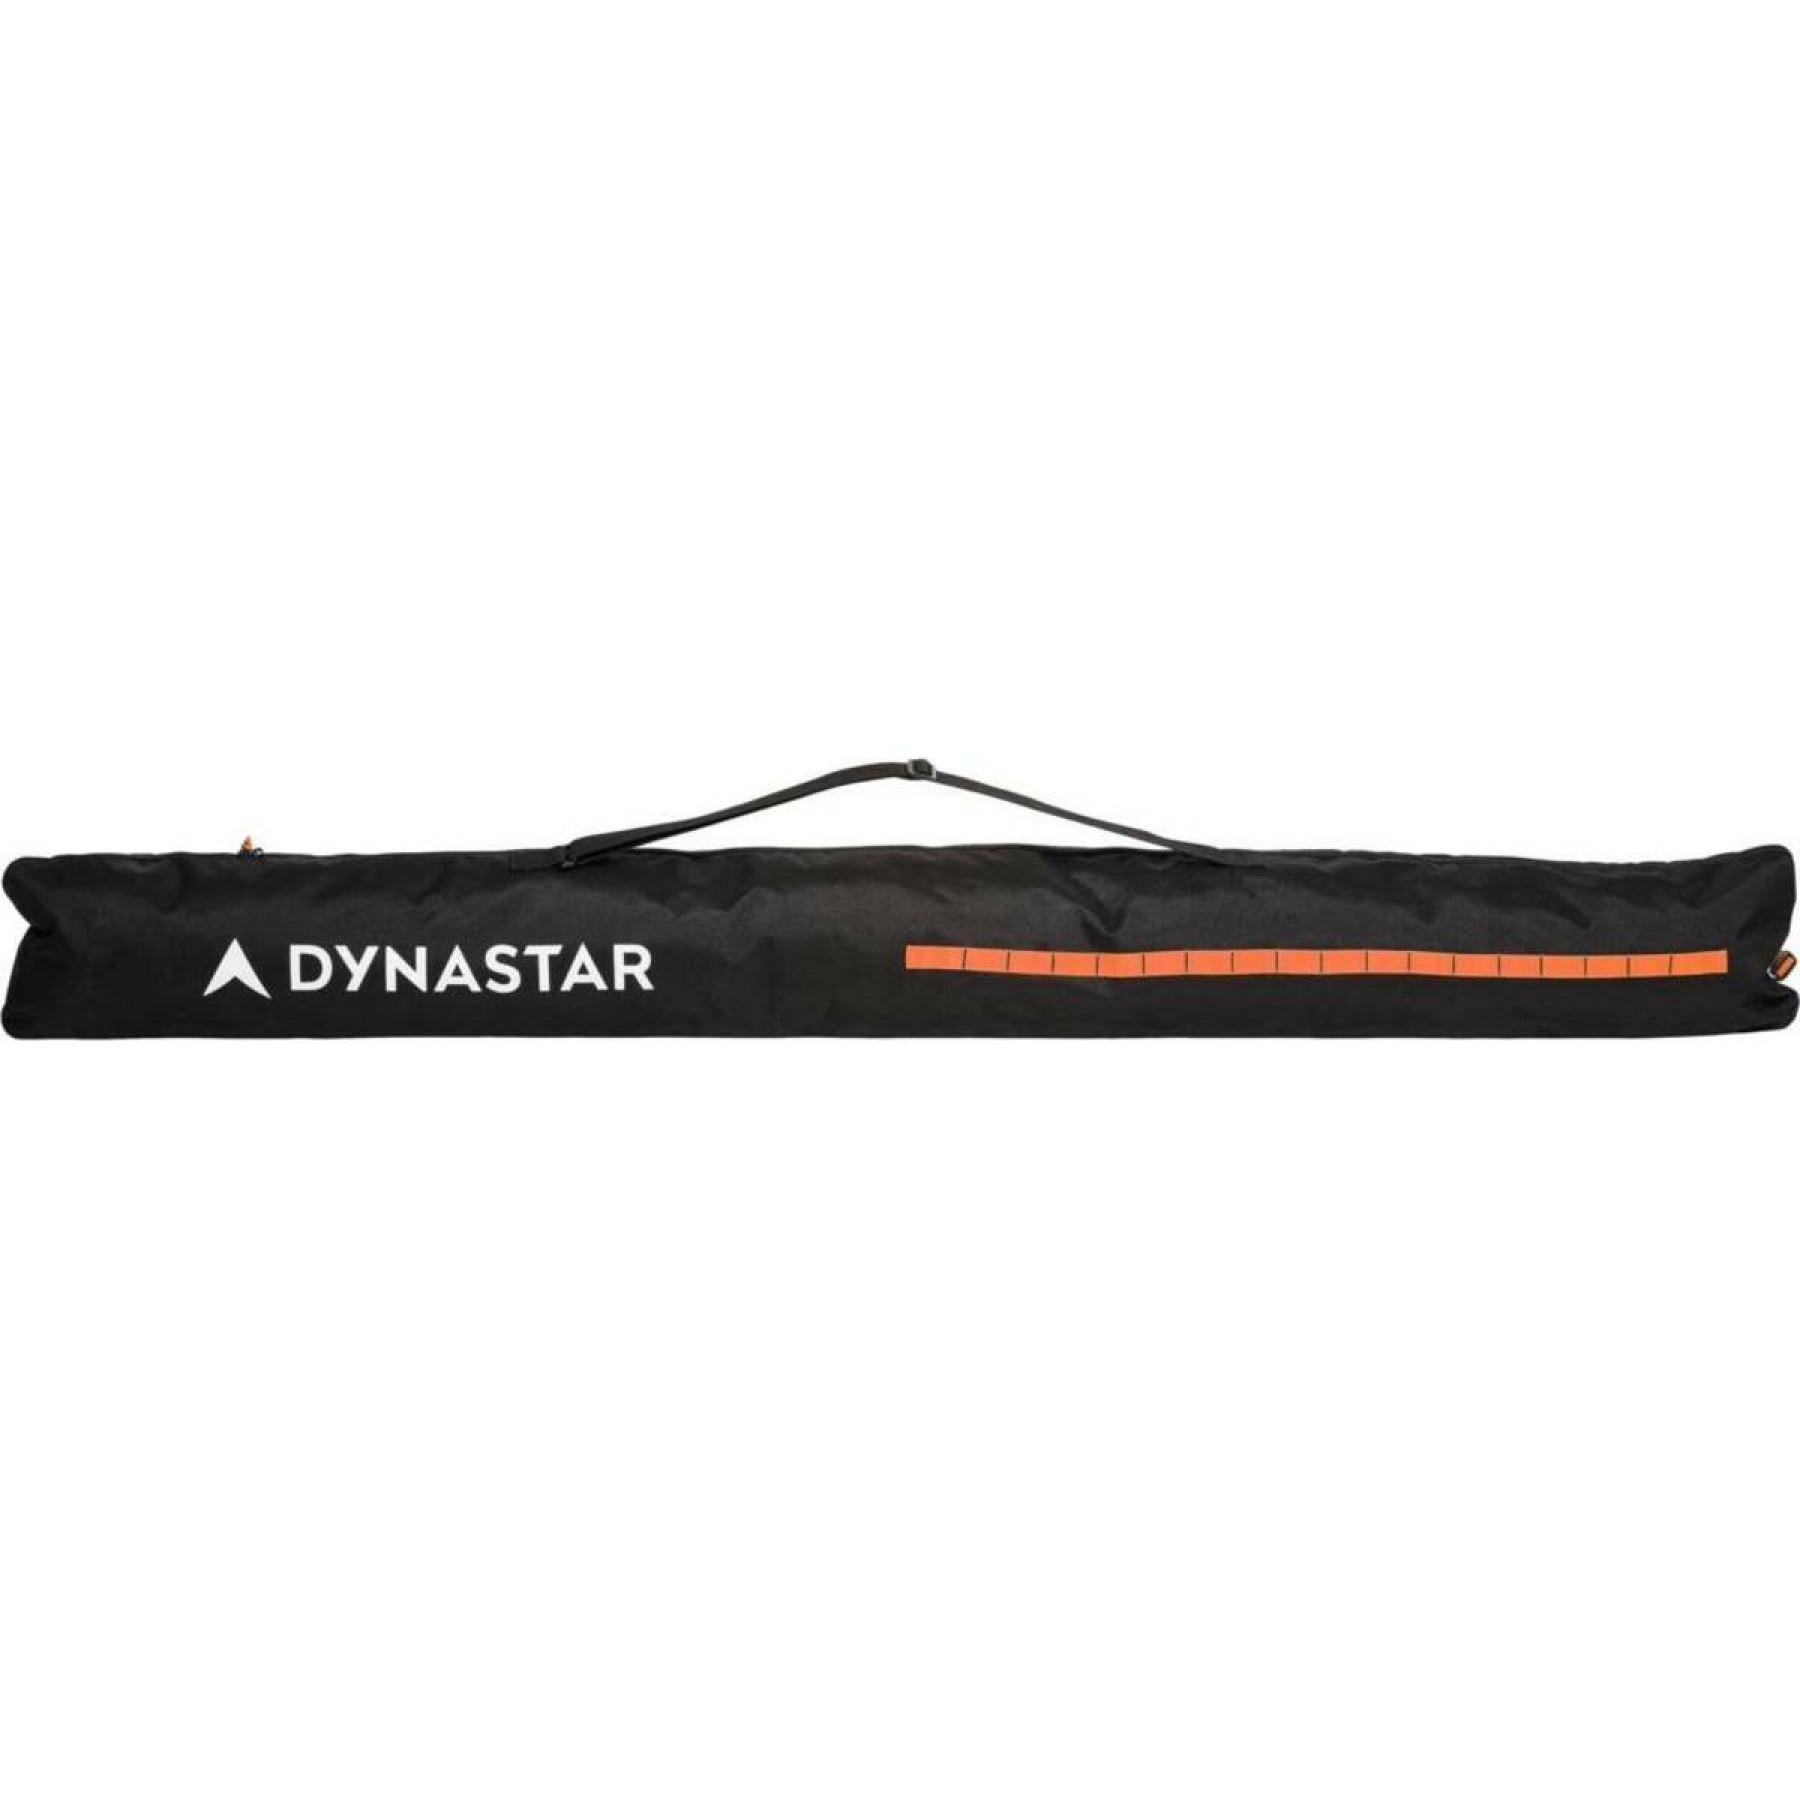 Sac à skis Dynastar extendable 160-210cm